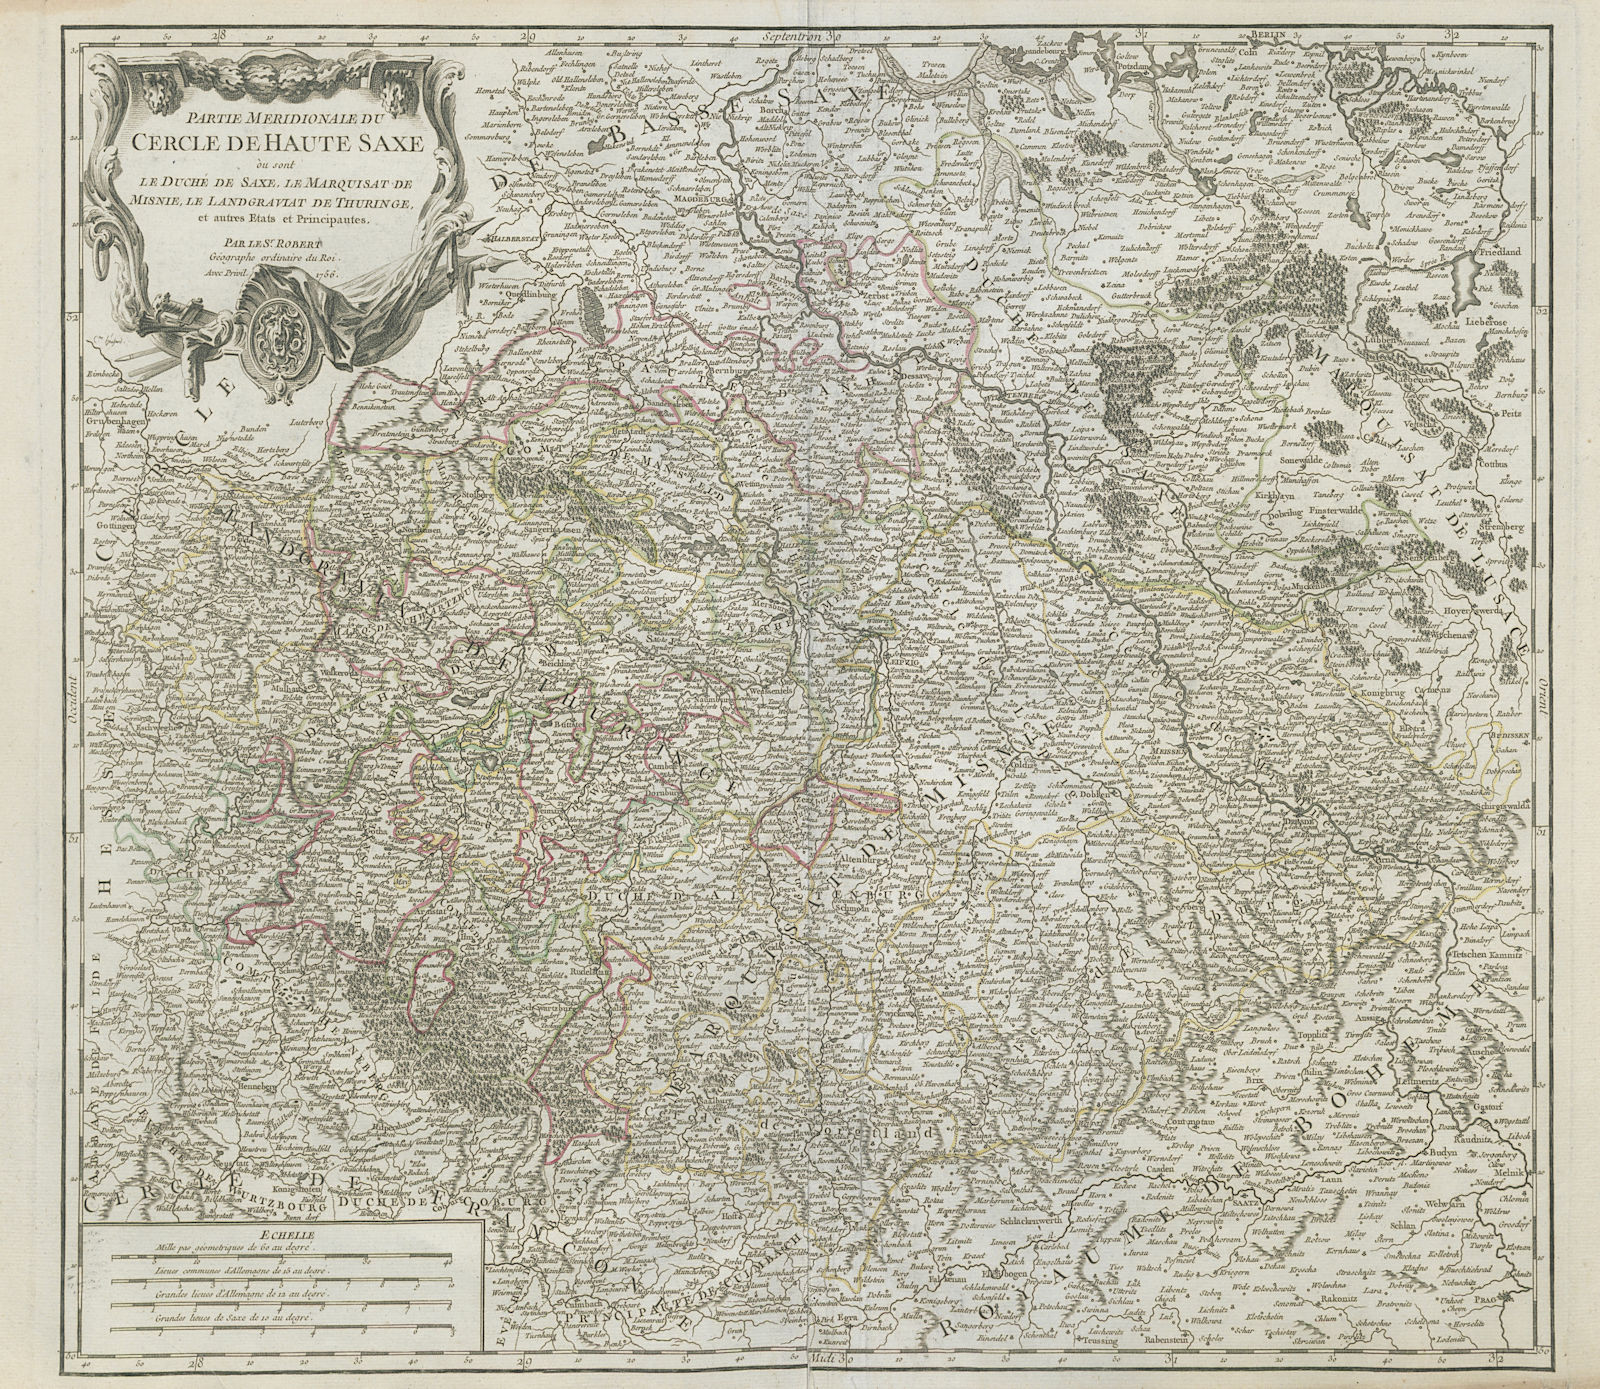 "Partie Meridionale du Cercle Haute Saxe" East Germany Saxony. VAUGONDY 1756 map